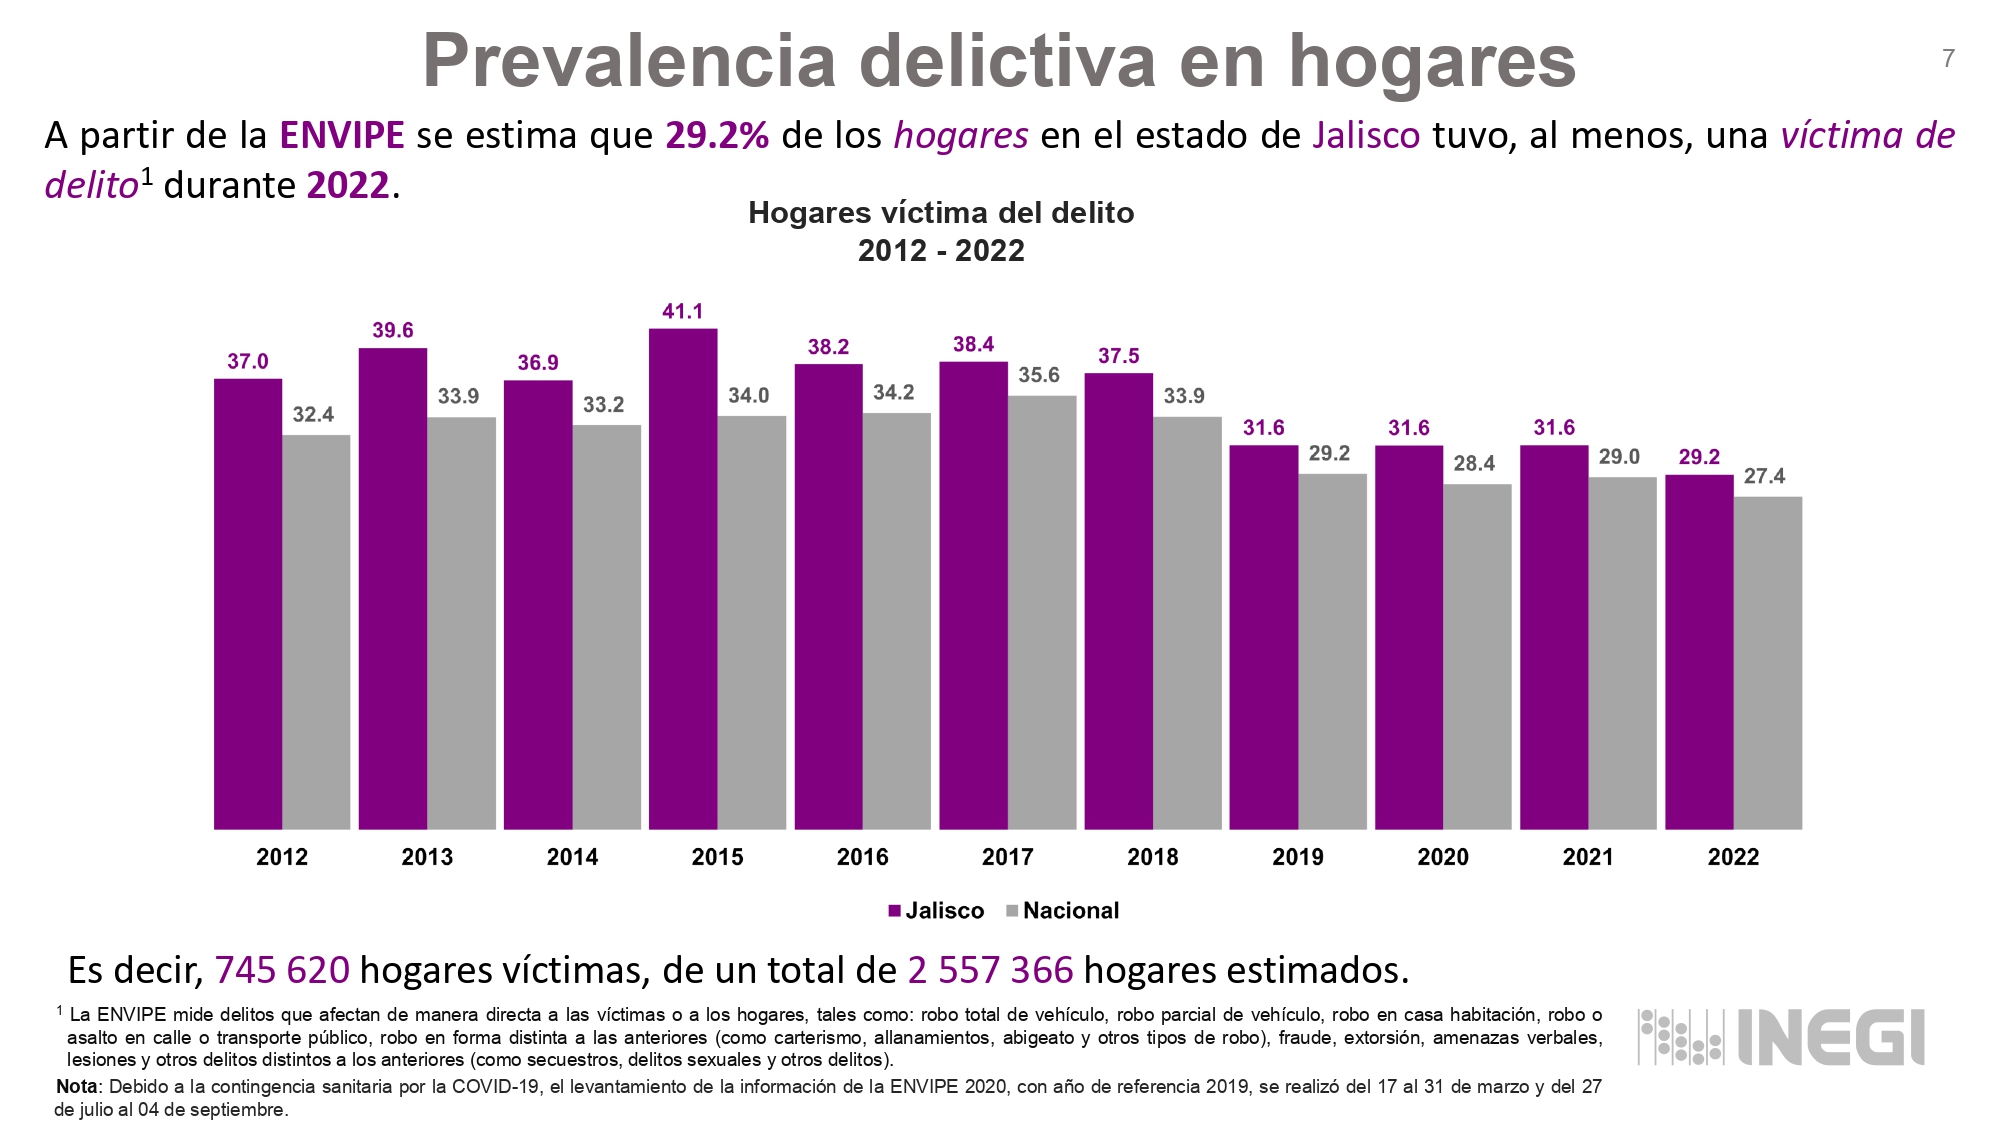 Alcanza Jalisco la cifra más baja de víctimas de delito de los últimos 11  años según la encuesta ENVIPE del INEGI